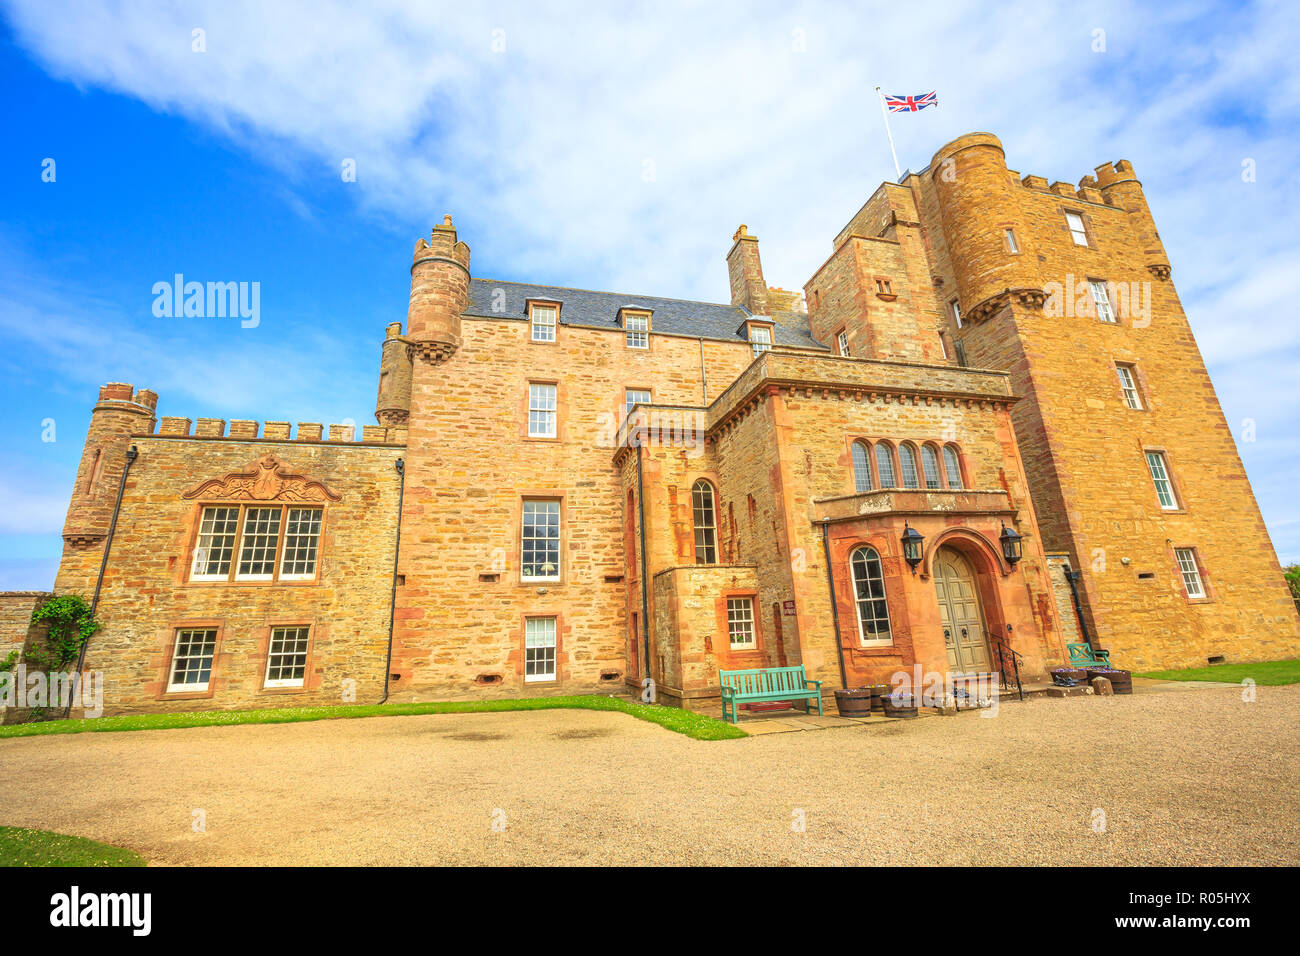 Barrogill château près de Thurso des Highland en Ecosse, Royaume-Uni. Château de Mey monument populaire et célèbre attraction touristique. Banque D'Images